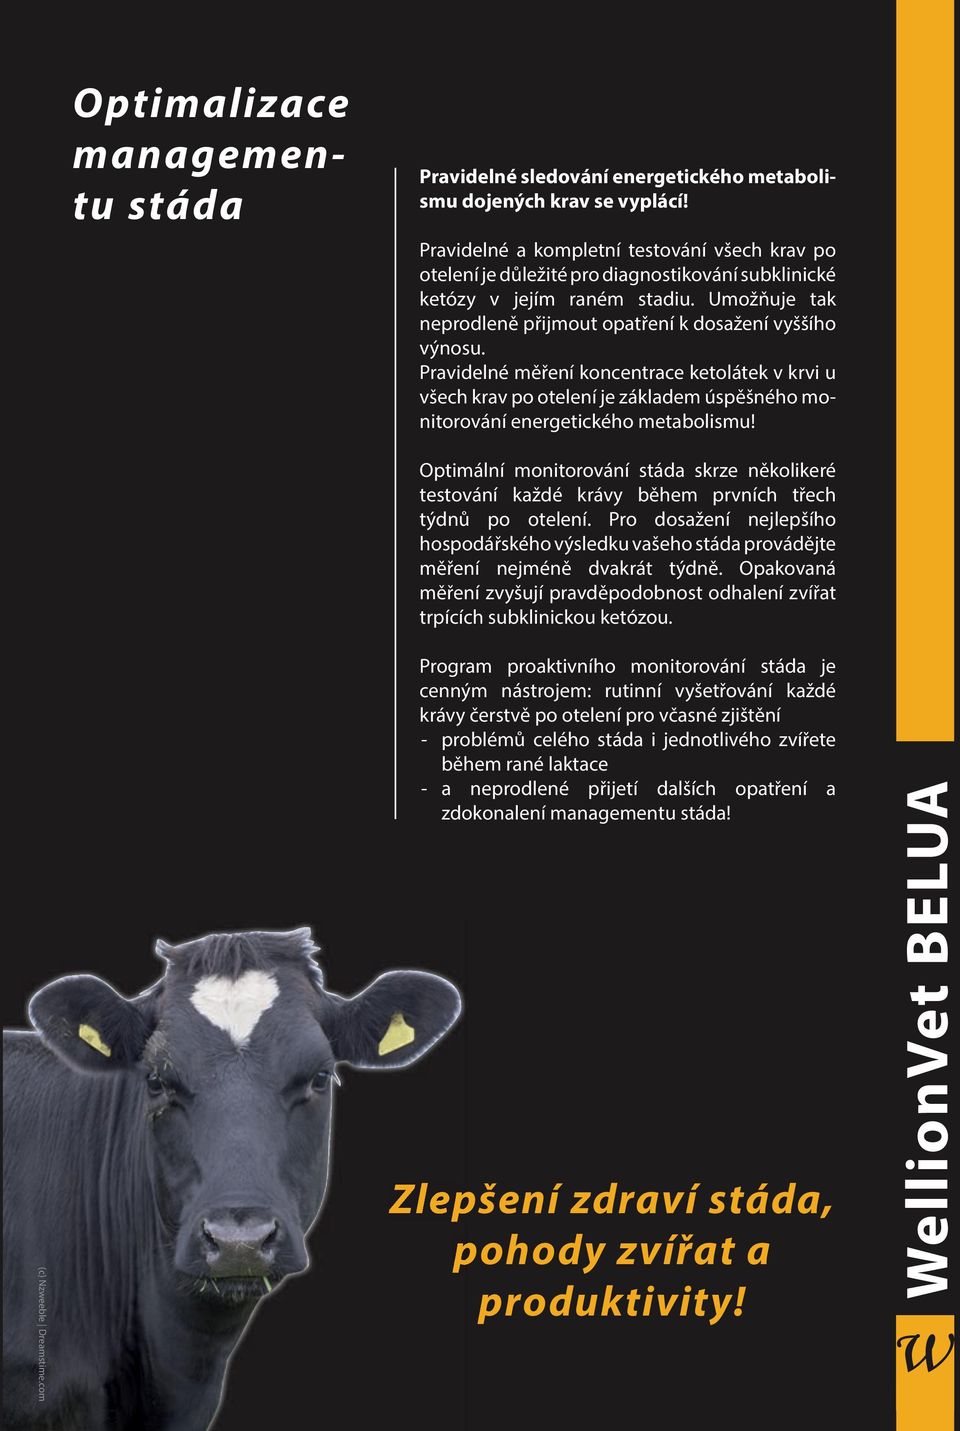 Pravidelné měření koncentrace ketolátek v krvi u všech krav po otelení je základem úspěšného monitorování energetického metabolismu!